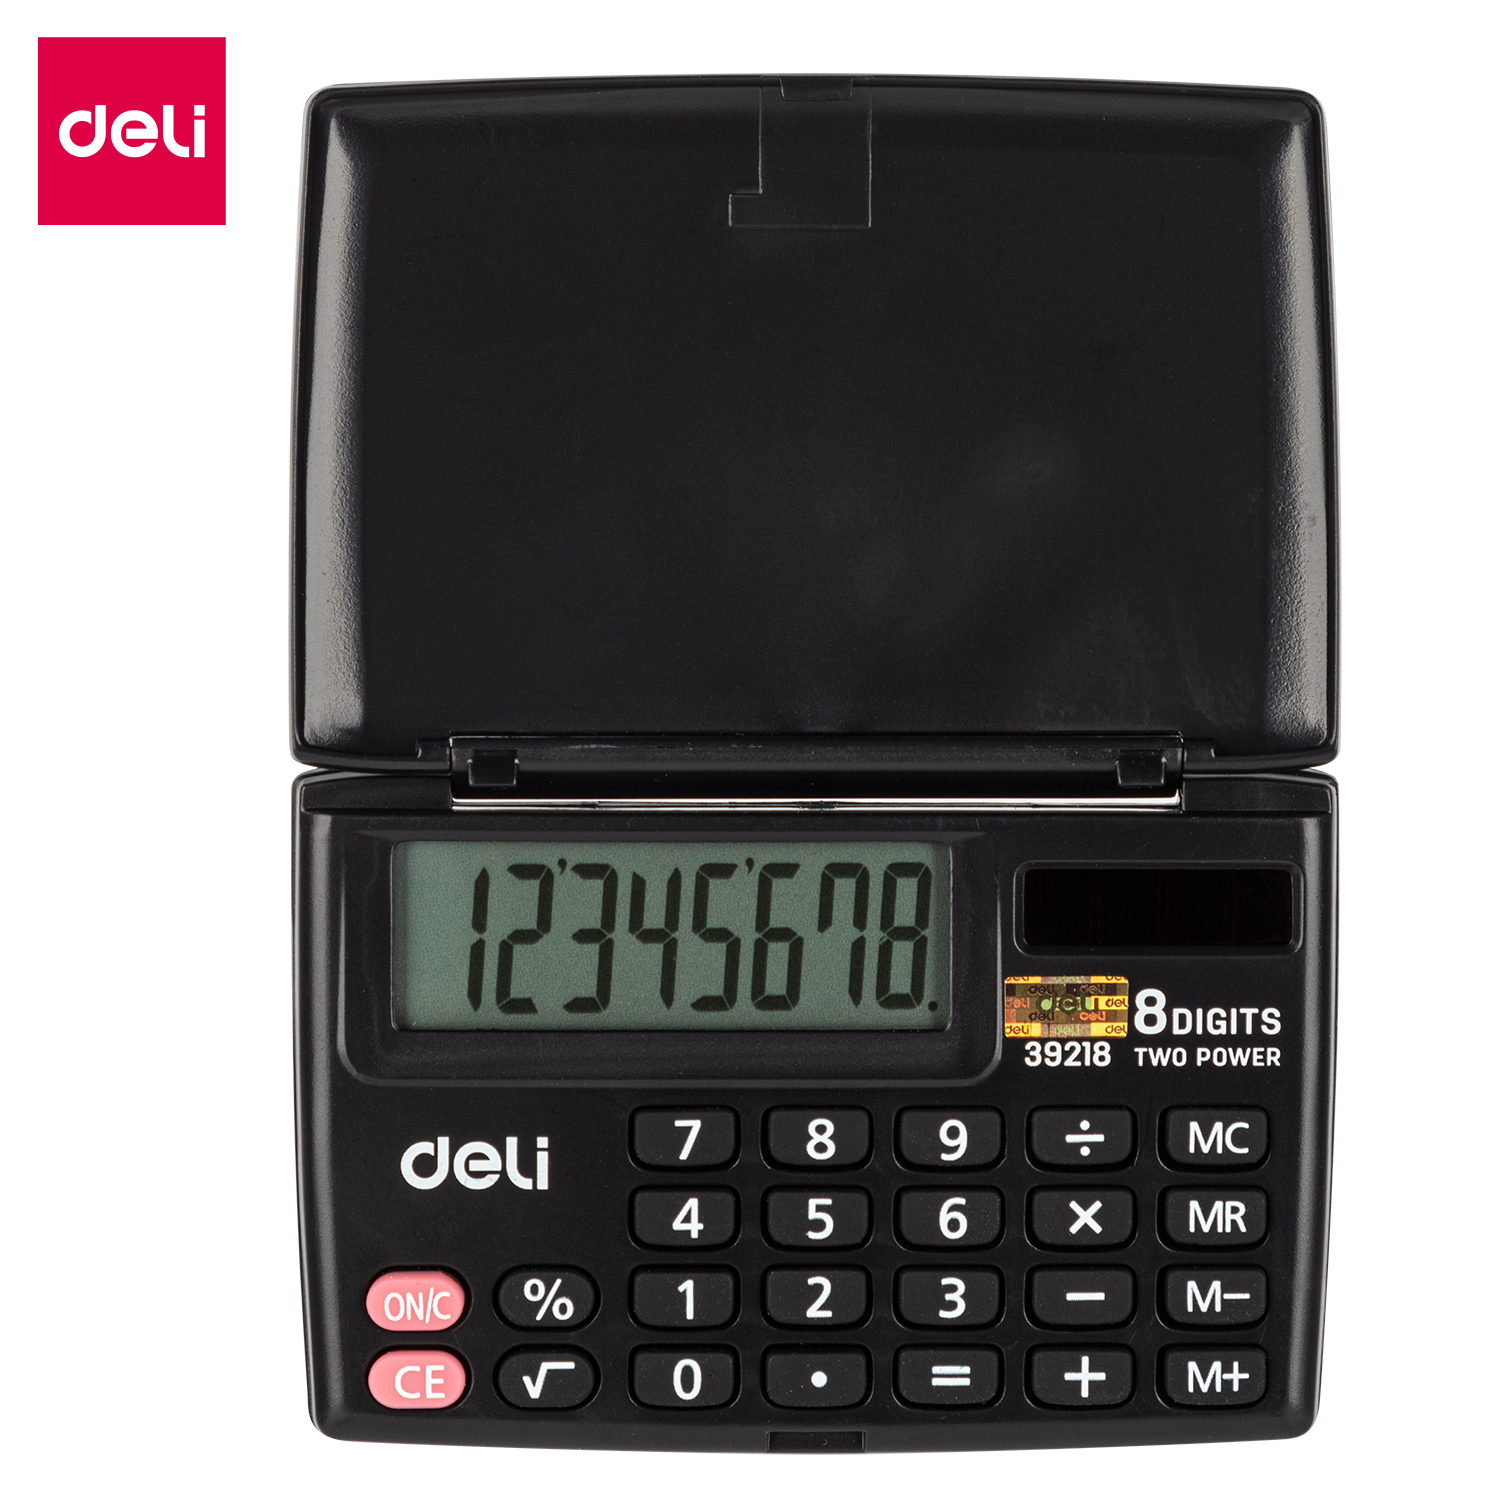 Deli-E39218 Portable Calculator